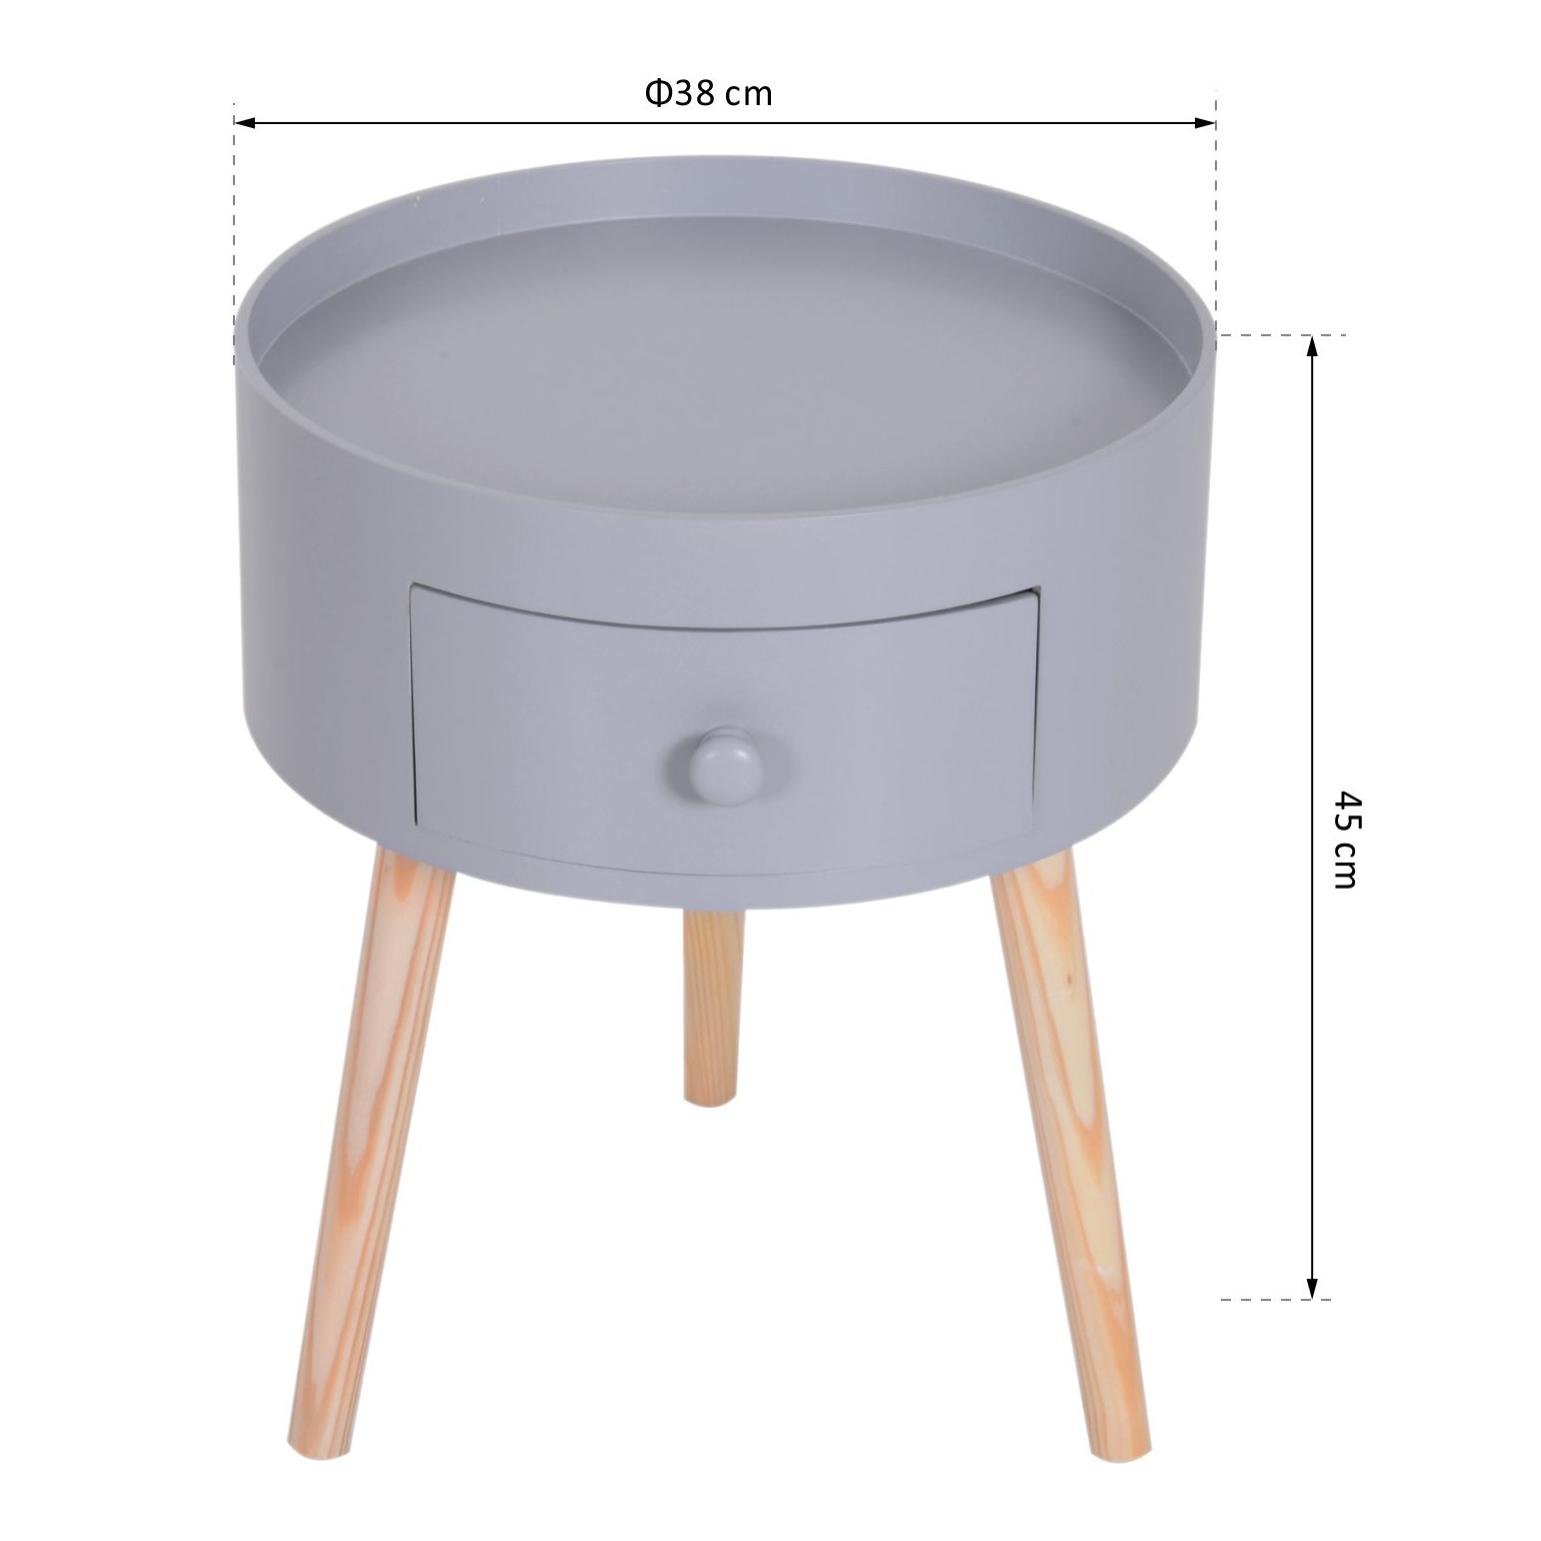 Chevet table de nuit ronde design scandinave tiroir bicolore pieds effilés inclinés bois massif chêne clair gris